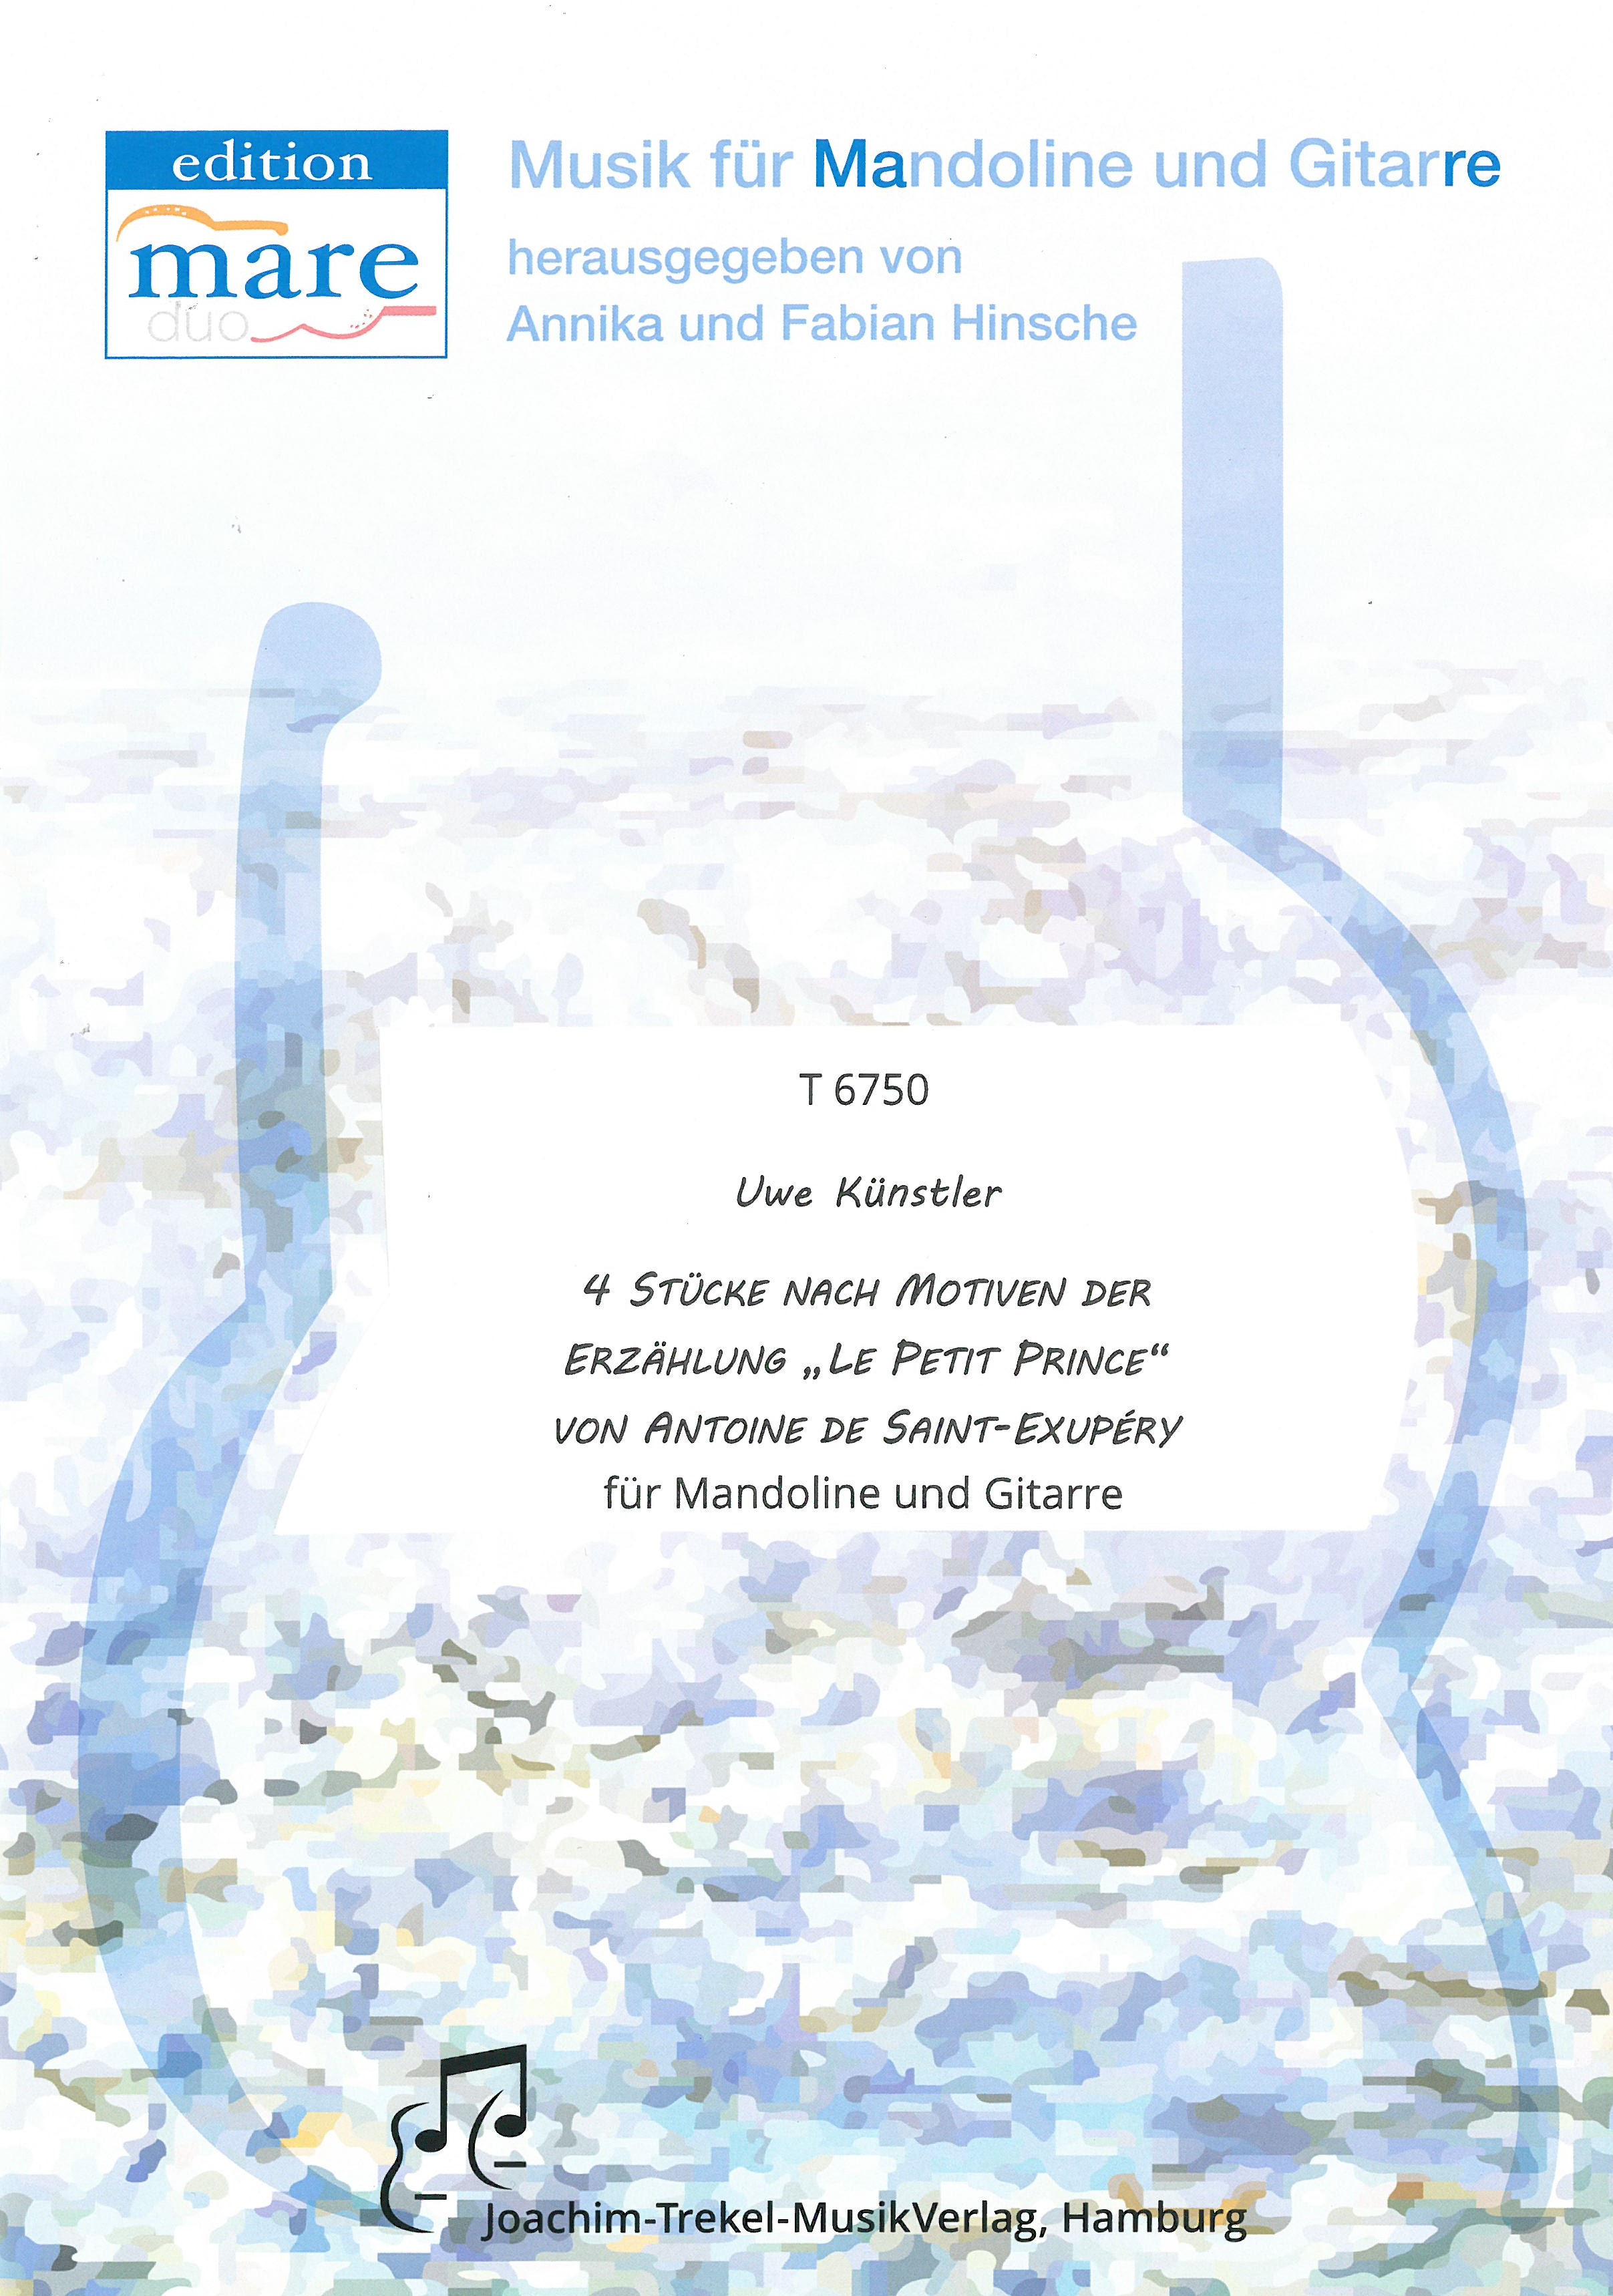 4 Stücke nach Motiven der Erzählung "Le Petit Prince“